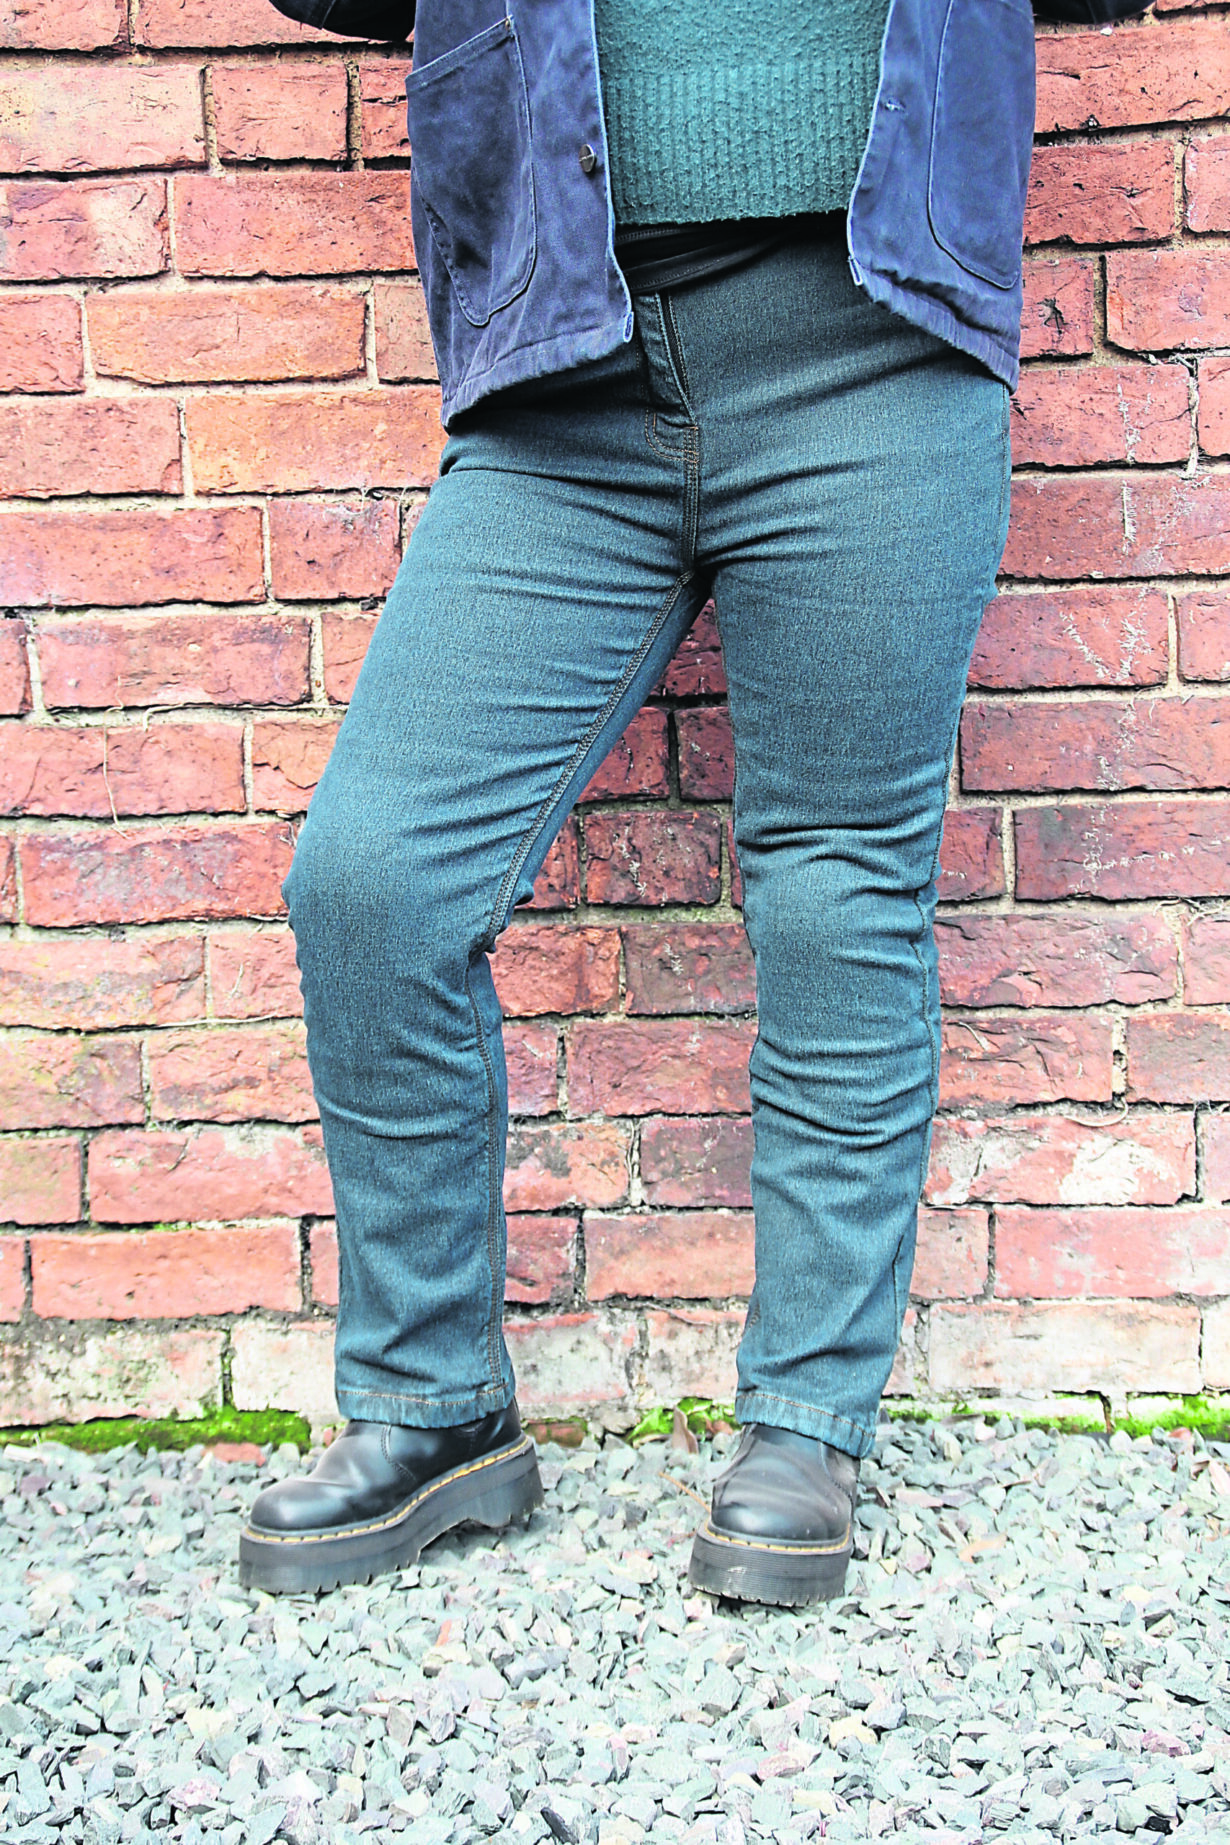 What We Wear: Roadskin Taranis Elite motorcycle jeans (ladies)